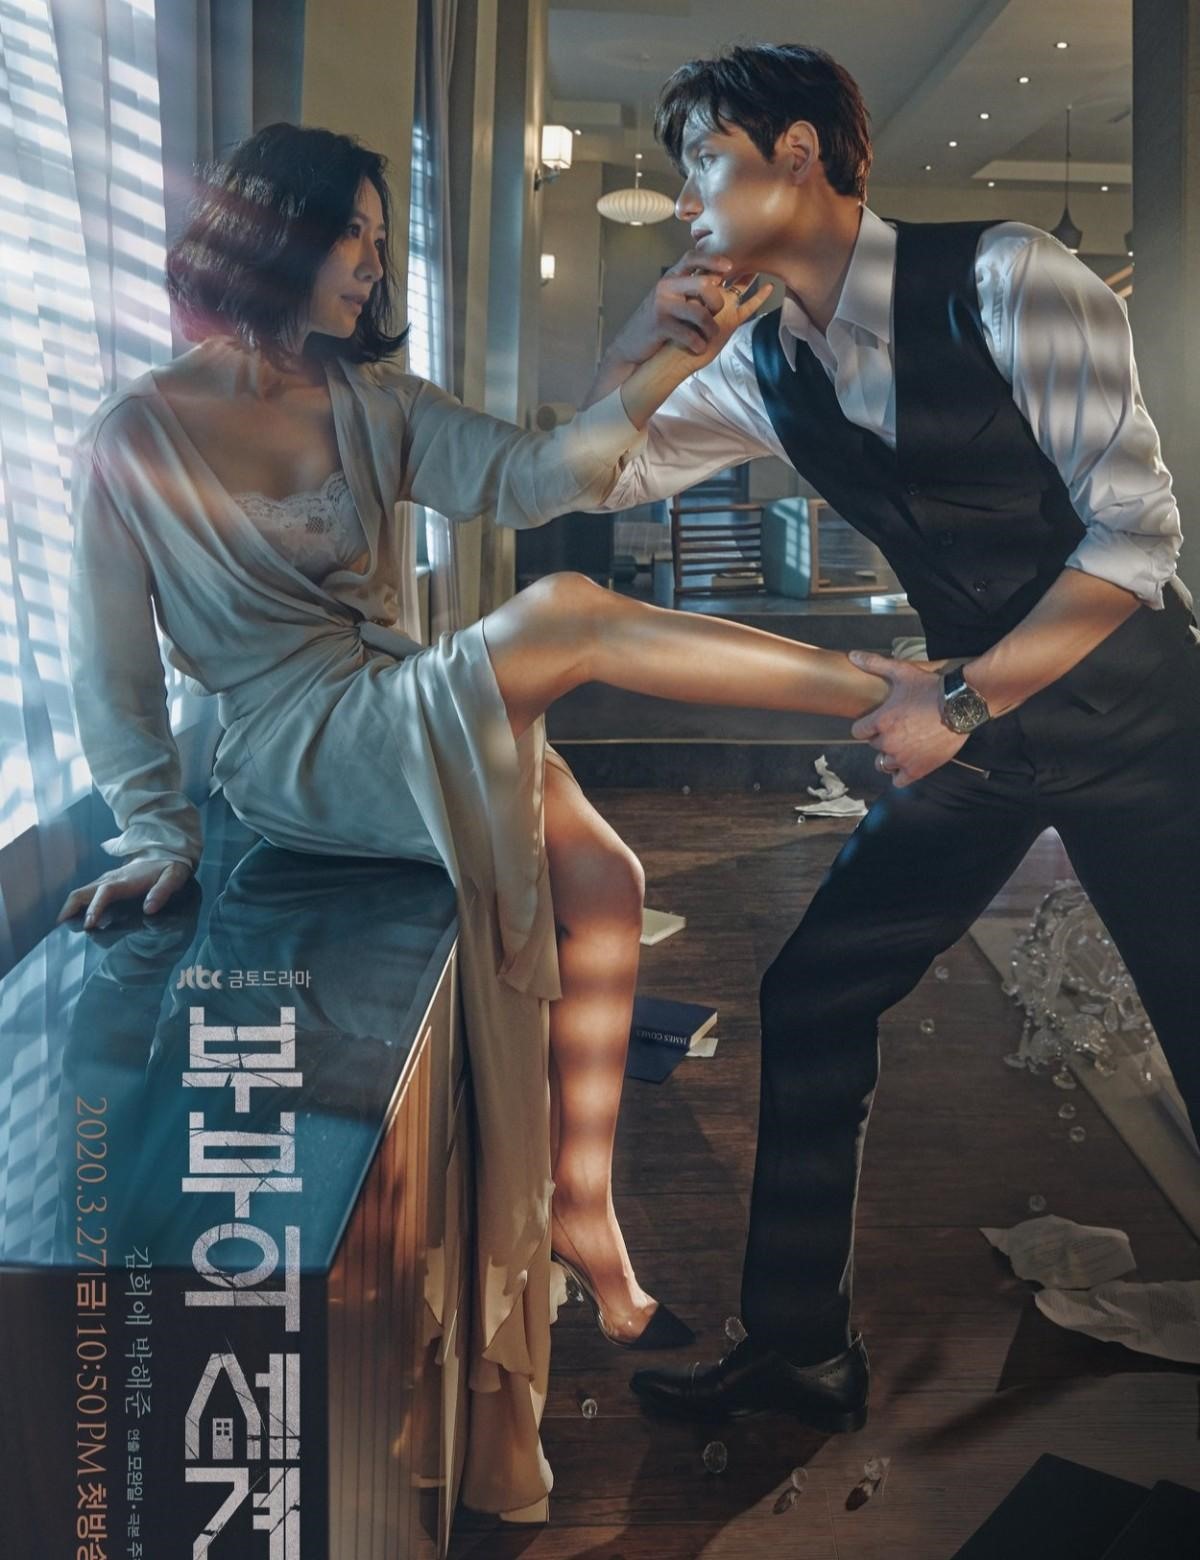 Vượt mặt 'Hạ cánh nơi anh', phim mới của Song Joong Ki được kỳ vọng dẫn đầu kỷ lục - ảnh 2